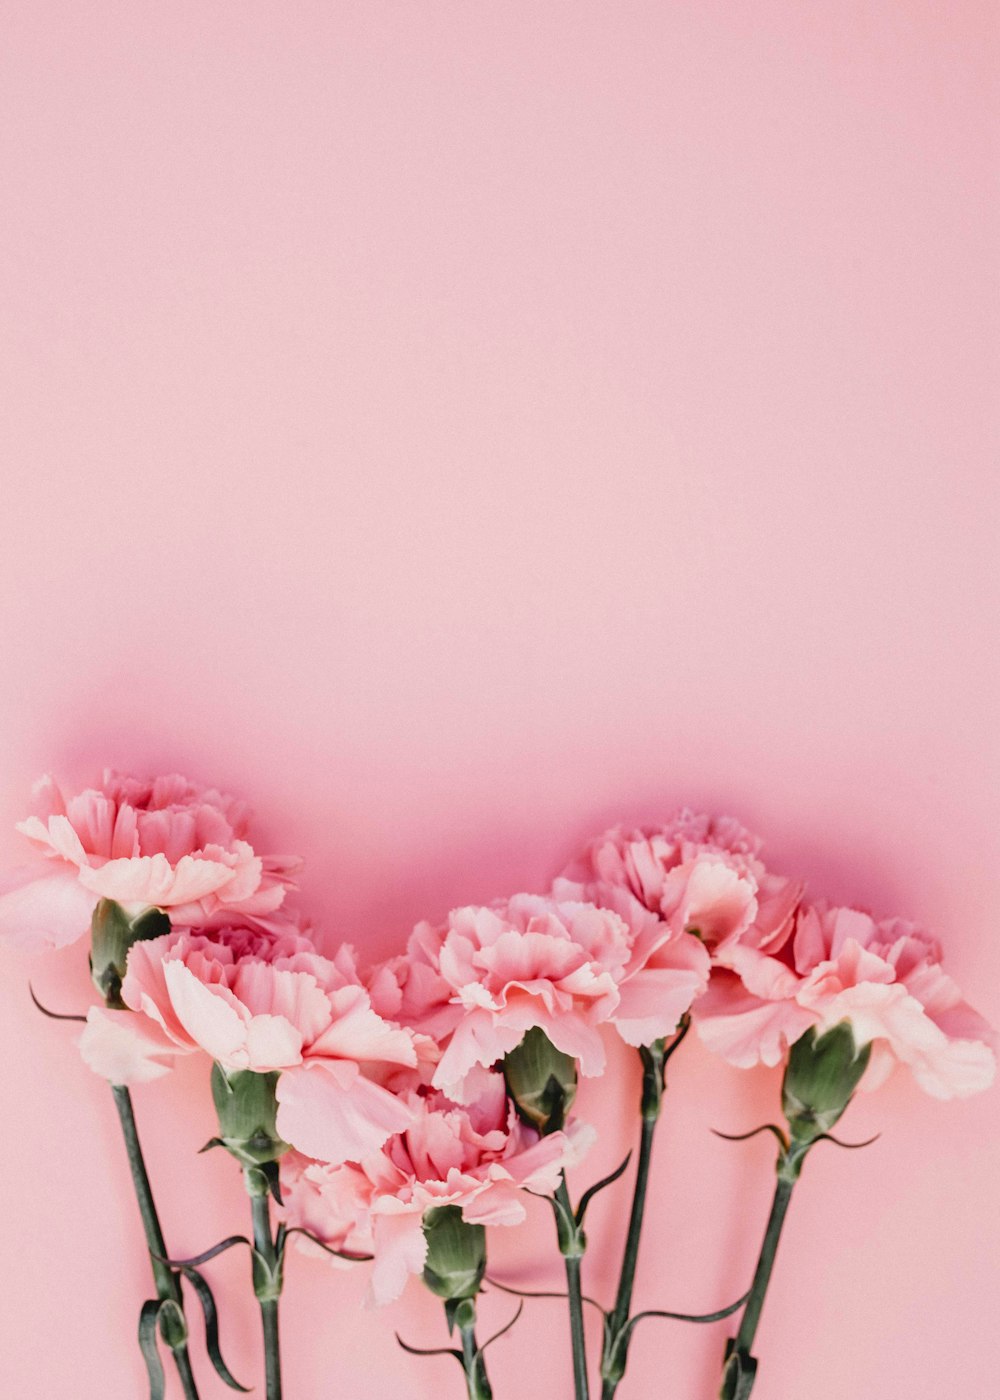 Tận hưởng vẻ đẹp tuyệt đẹp của hình nền màu hồng từ Unsplash. Bức ảnh quyến rũ và hoàn hảo này sẽ mang lại cho bạn cảm giác dịu nhẹ và tuyệt vời. Hãy mạo hiểm dùng màu hồng để tạo ra những thiết kế ấn tượng và đầy tính nghệ thuật. Xem ngay bức ảnh để tìm cảm hứng cho các dự án của bạn!